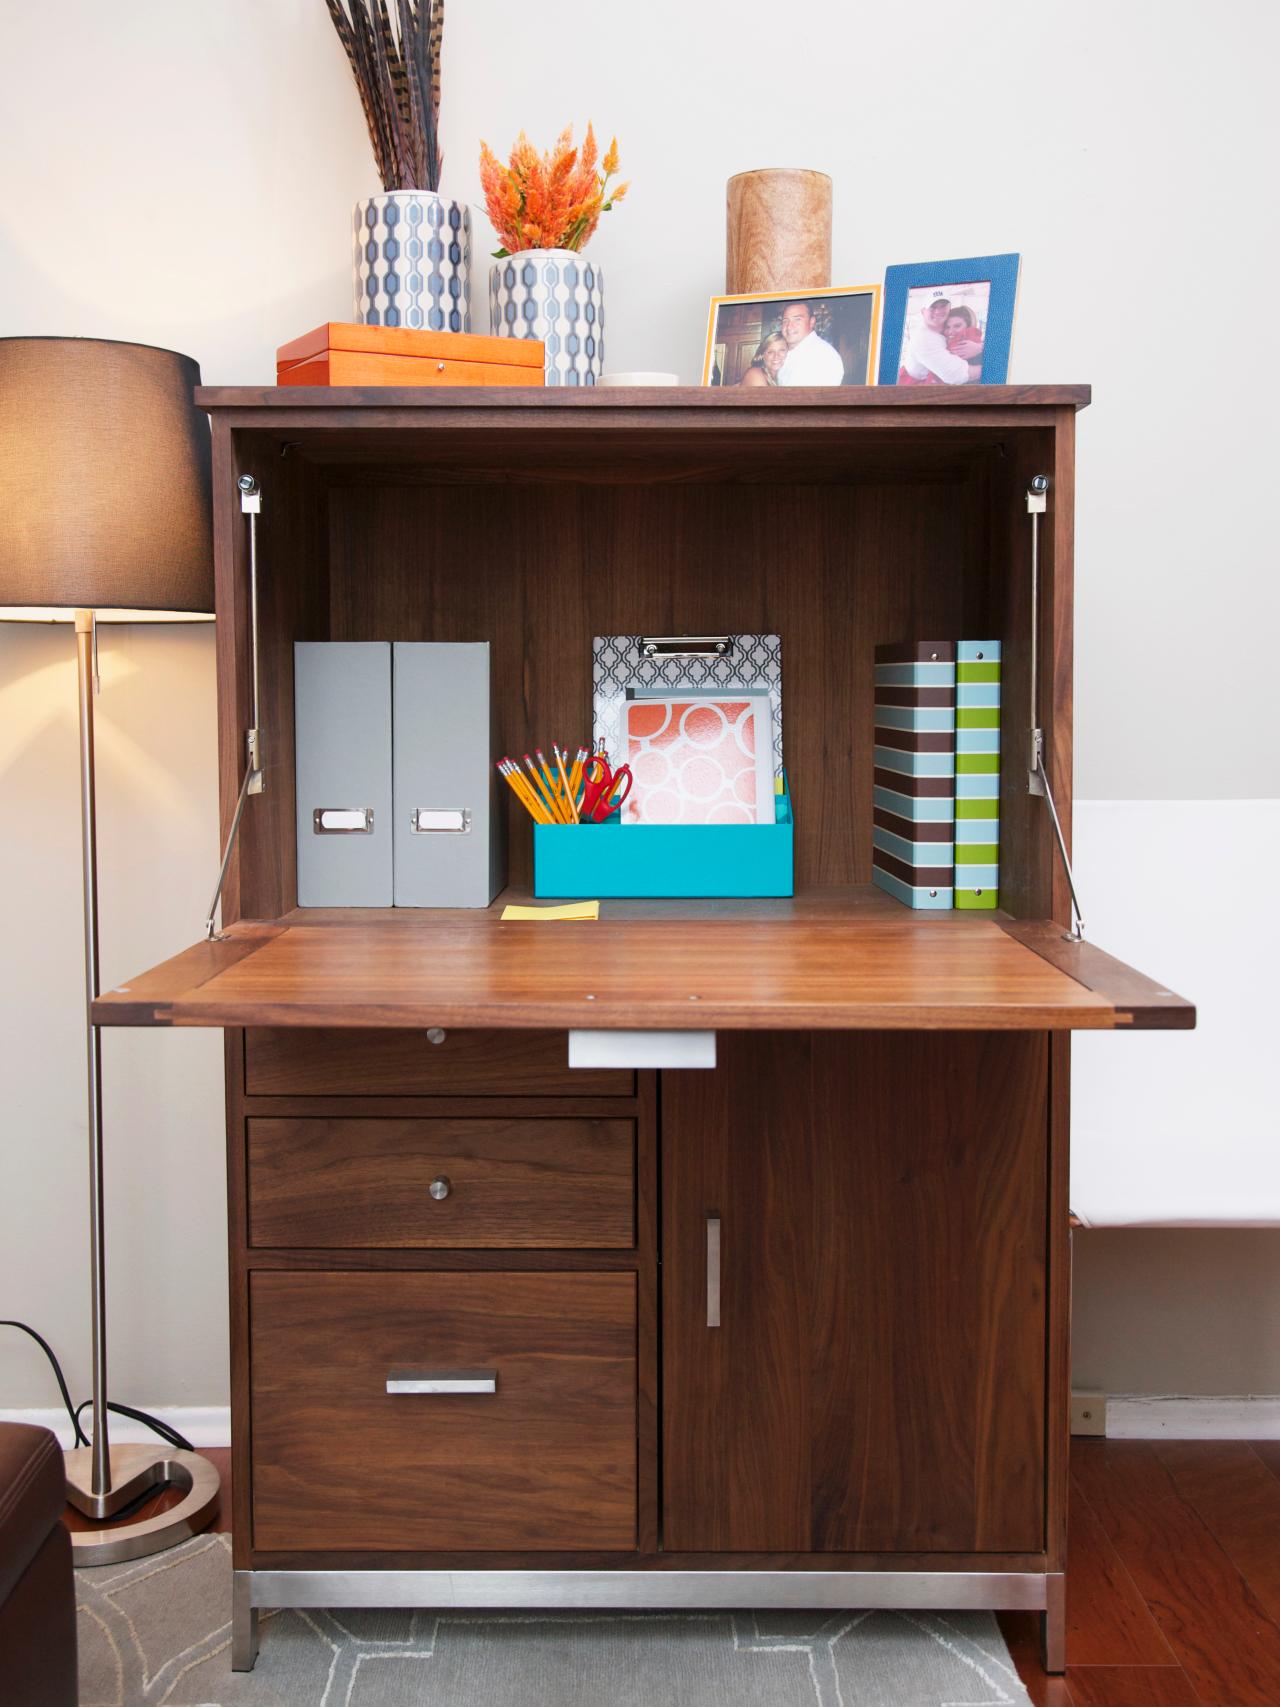 Fold-out desk unit for bedroom workspace